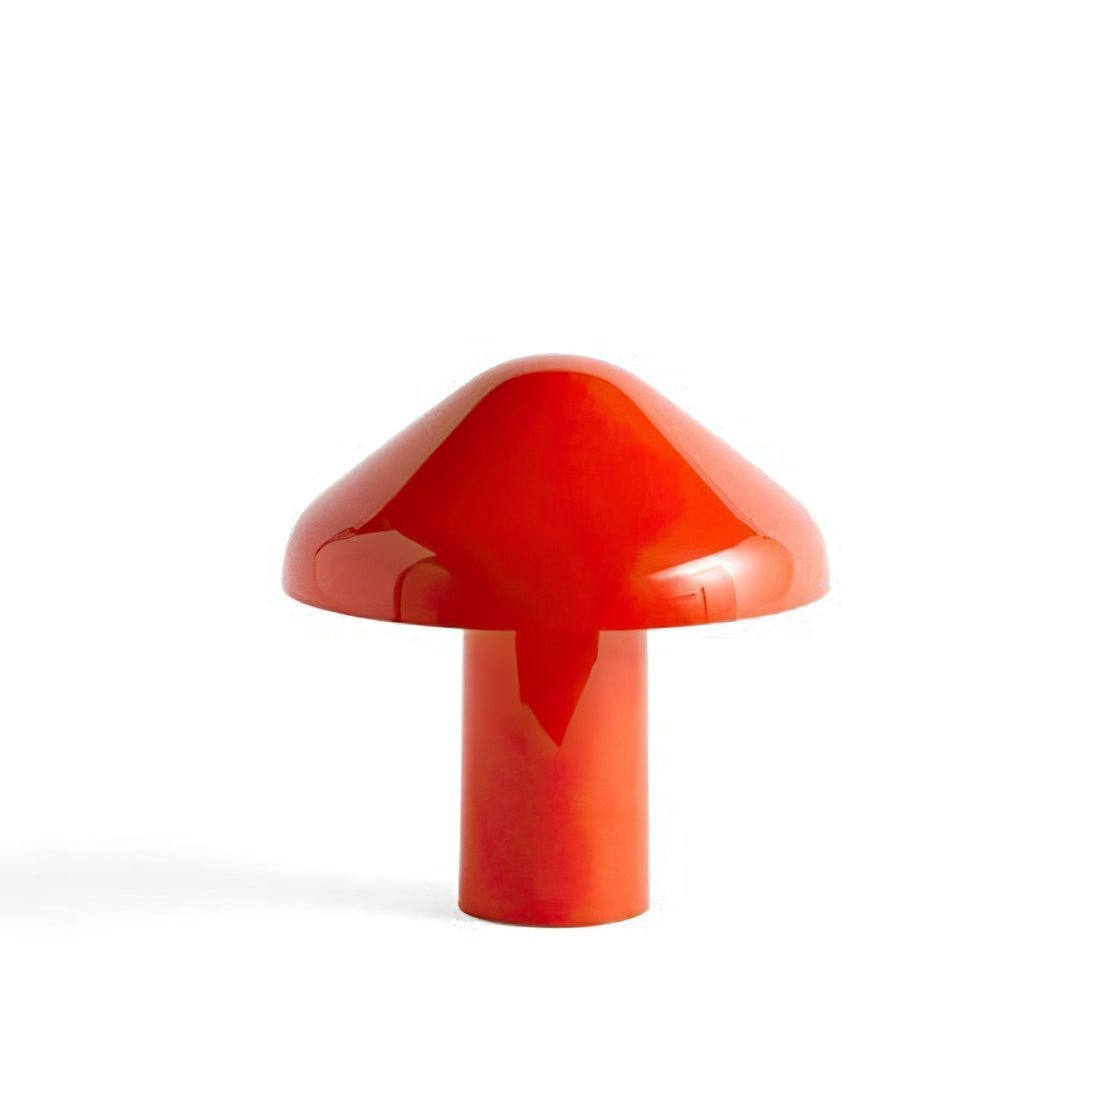 Red, metallic USB mushroom table lamp